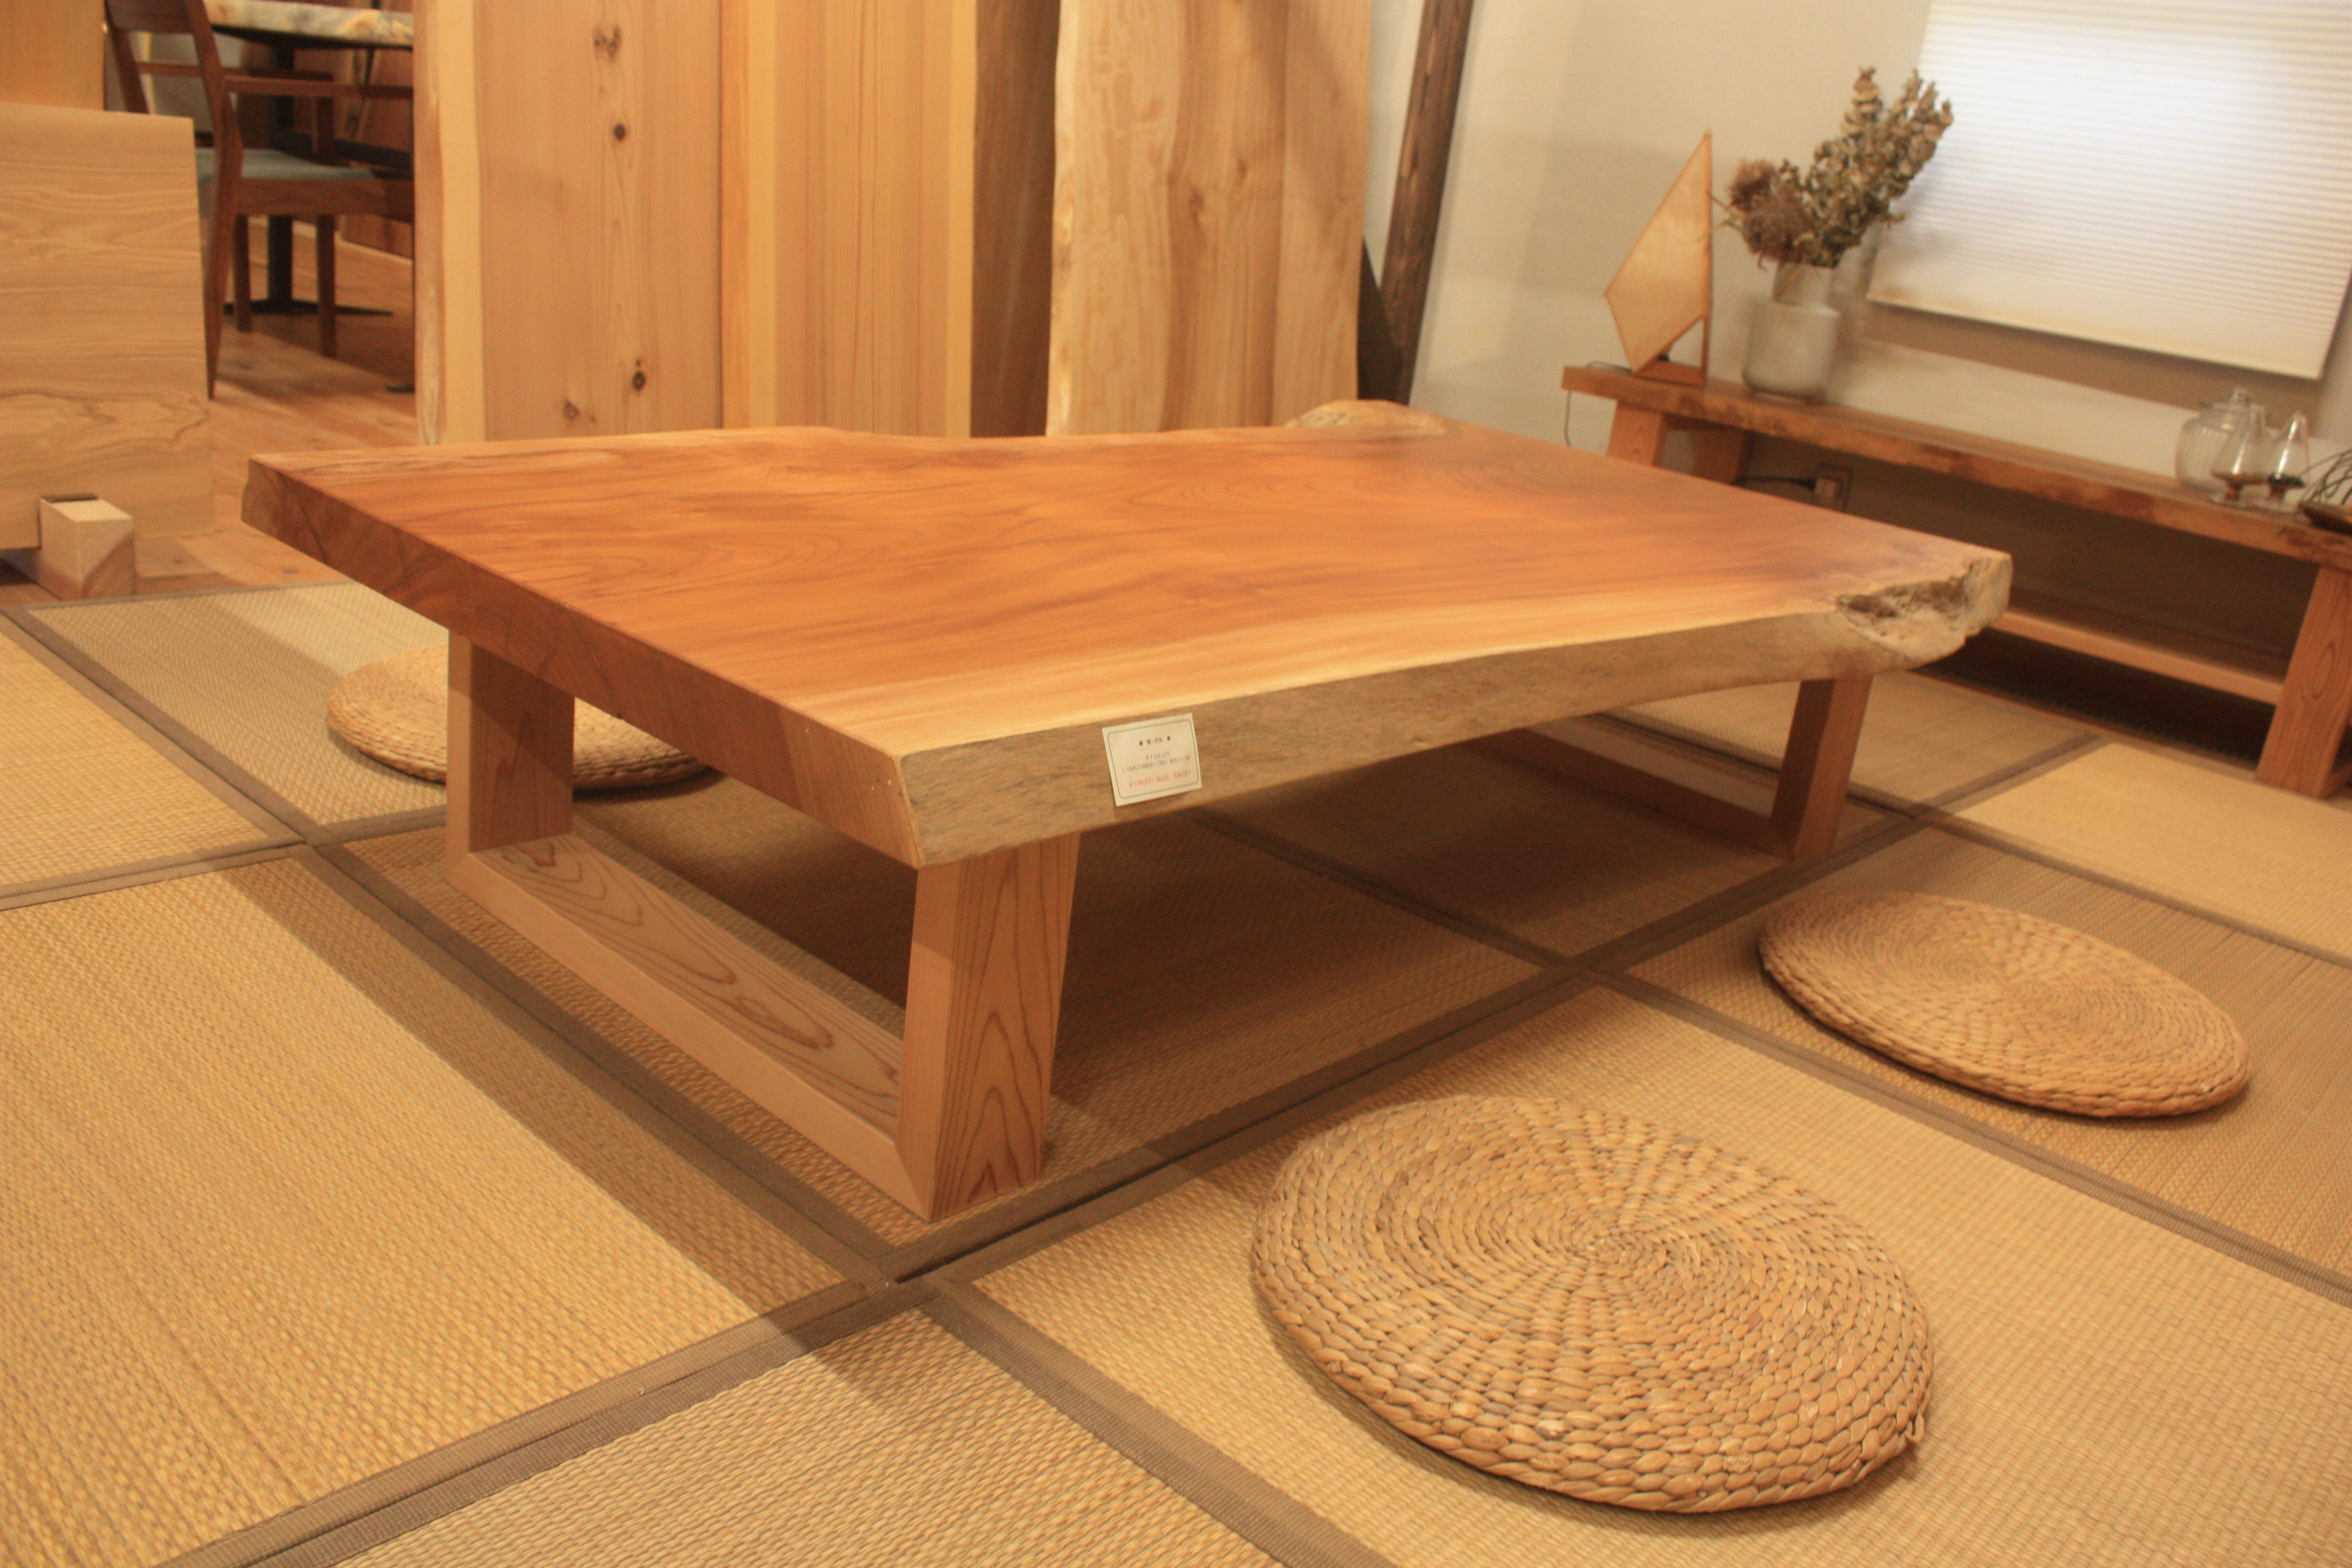 Wood 出雲テーブル 座卓 一枚板 無垢材 天然木 送料別途 【送料無料